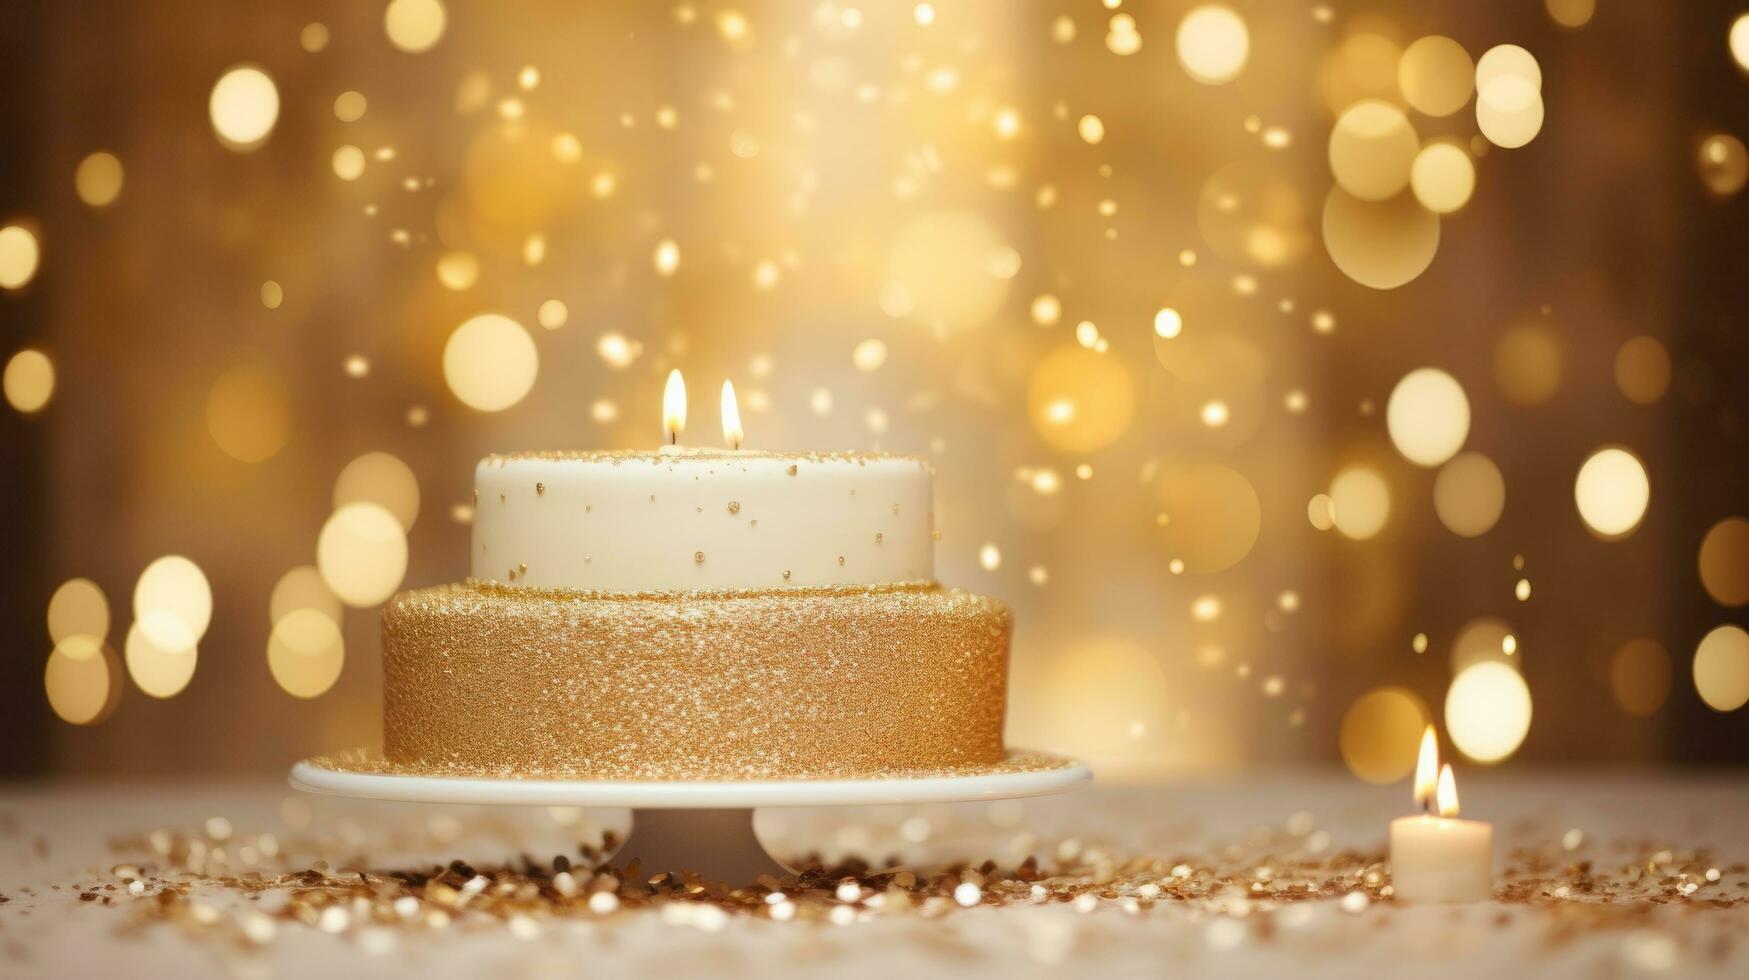 dourado aniversário bolo fundo foto